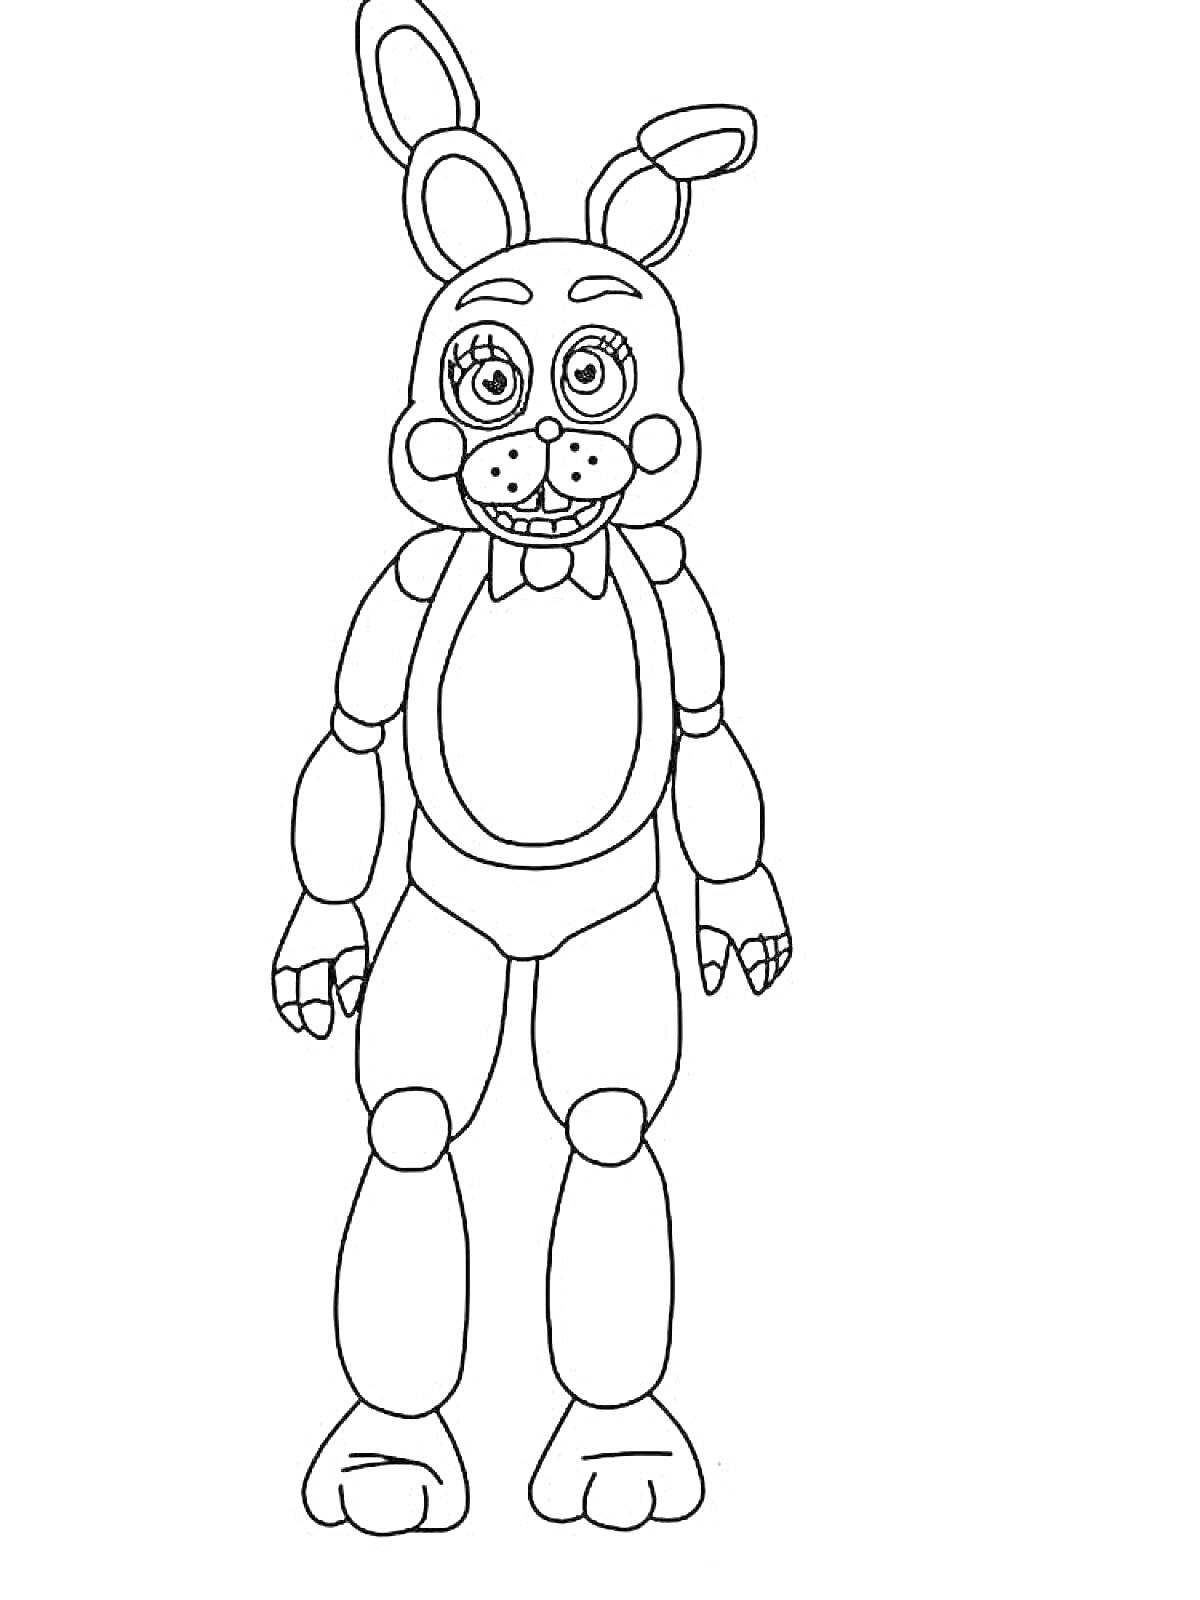 Раскраска Аниматронный кролик с округлыми глазами, большими ушами, пуговичным носом и улыбкой